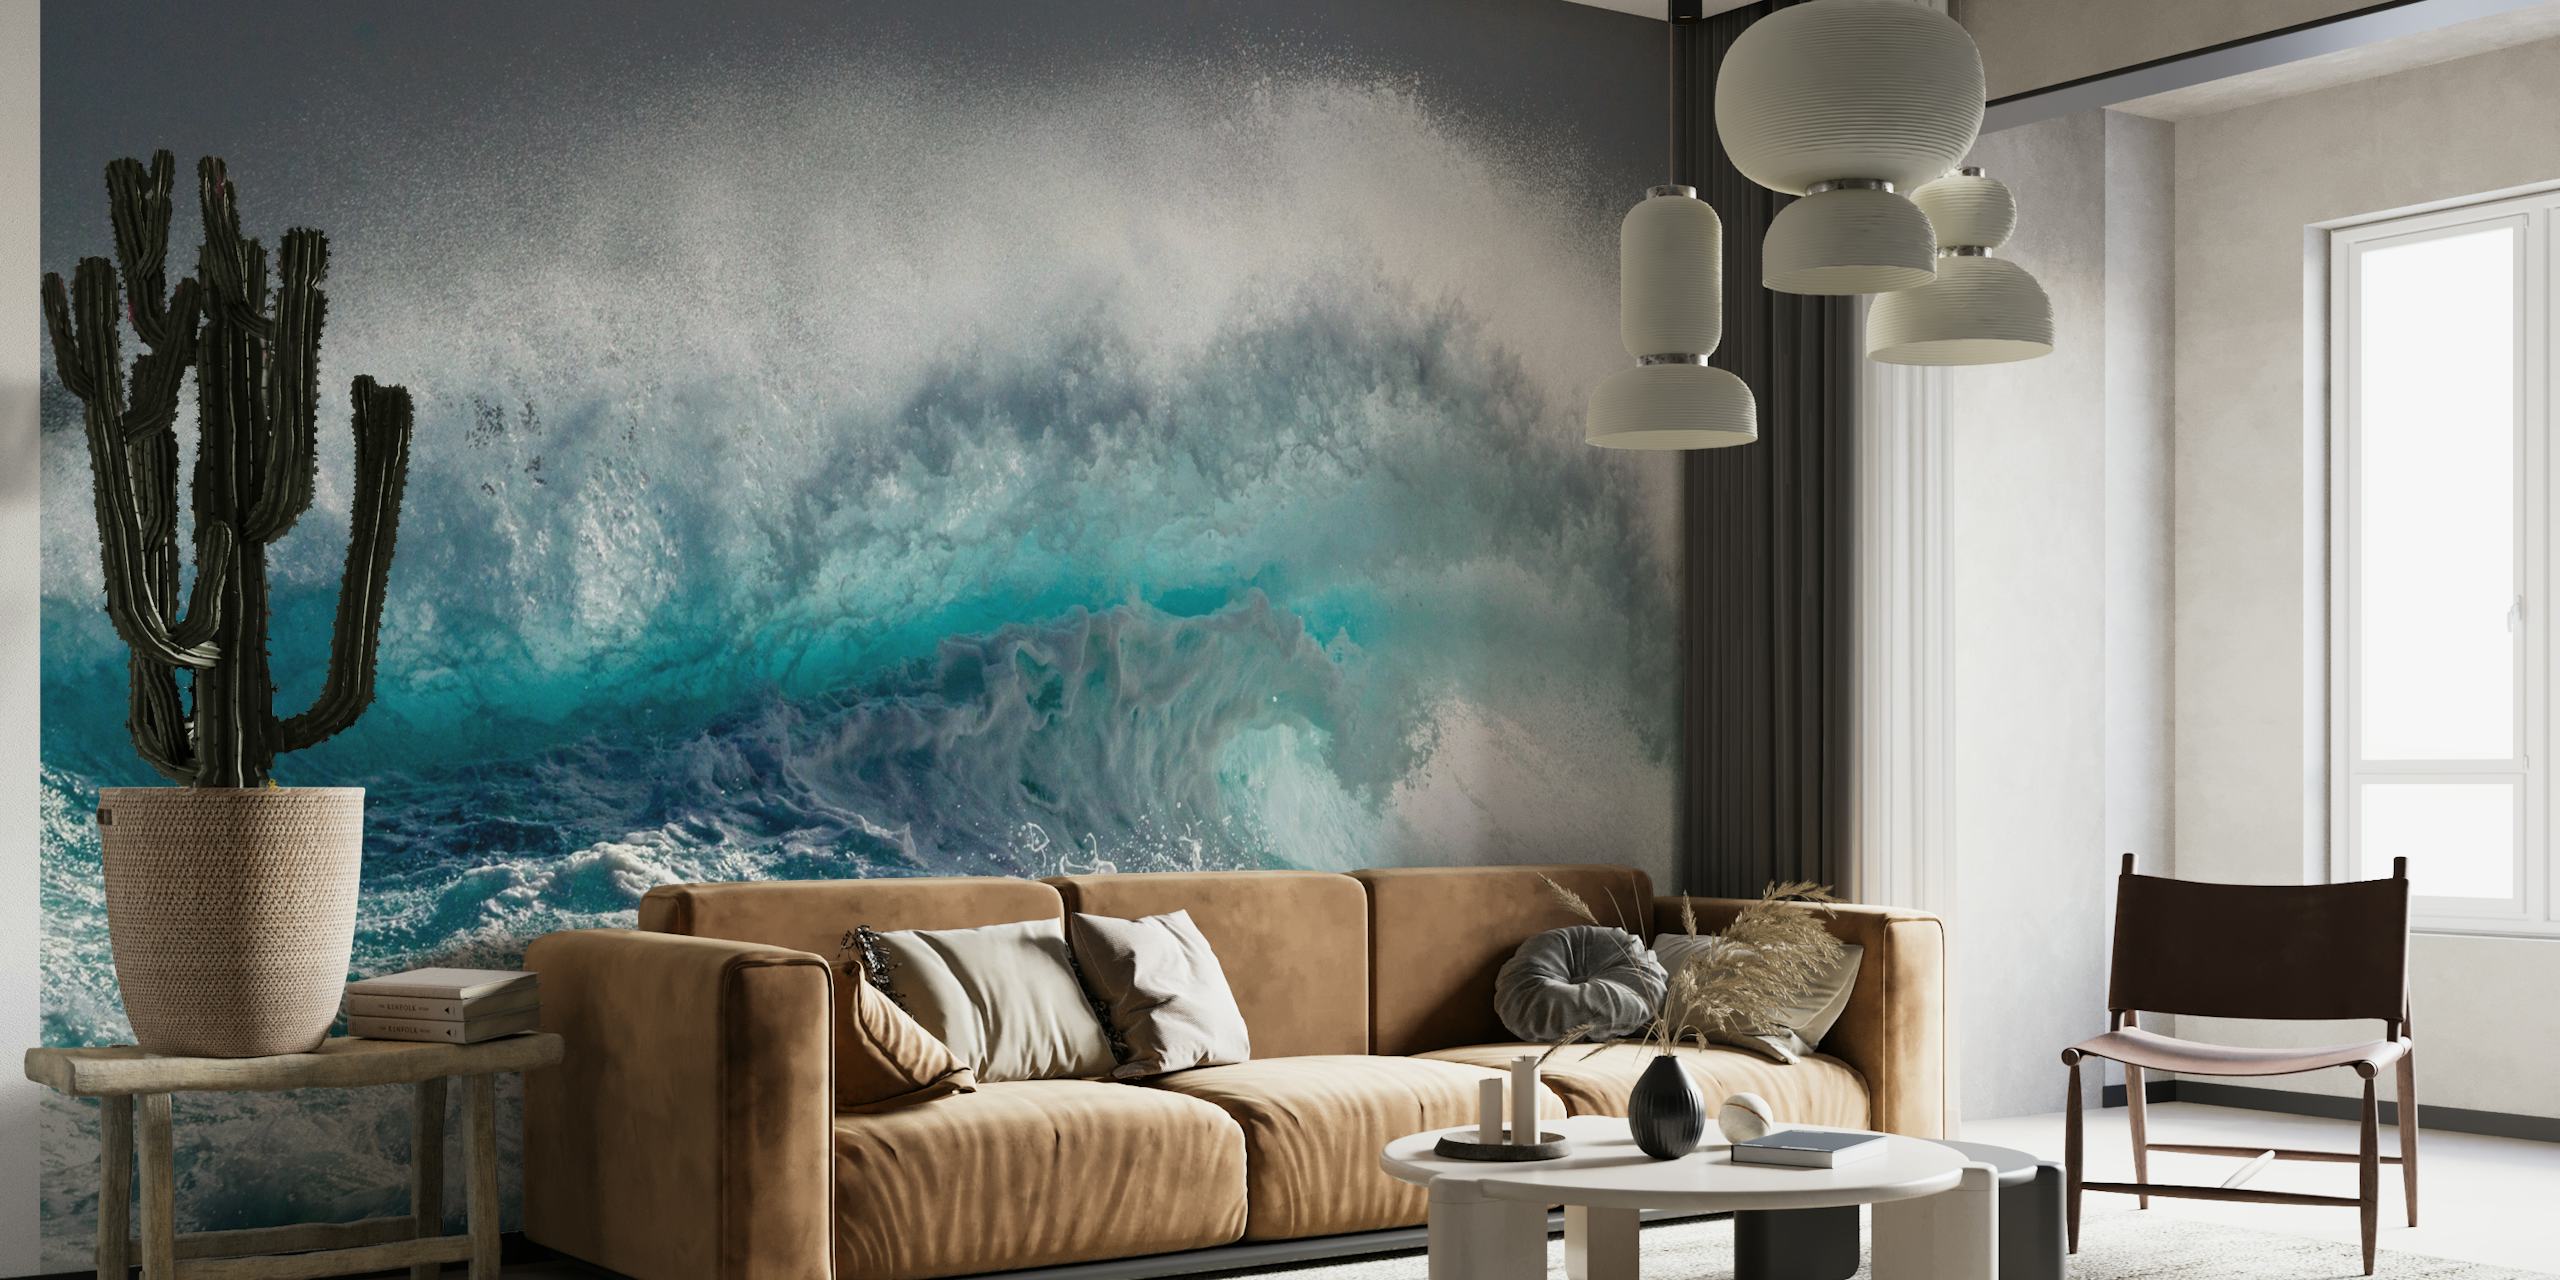 Mighty Water-Wandbild, das eine beeindruckende Welle in satten Blau- und Weißtönen zeigt